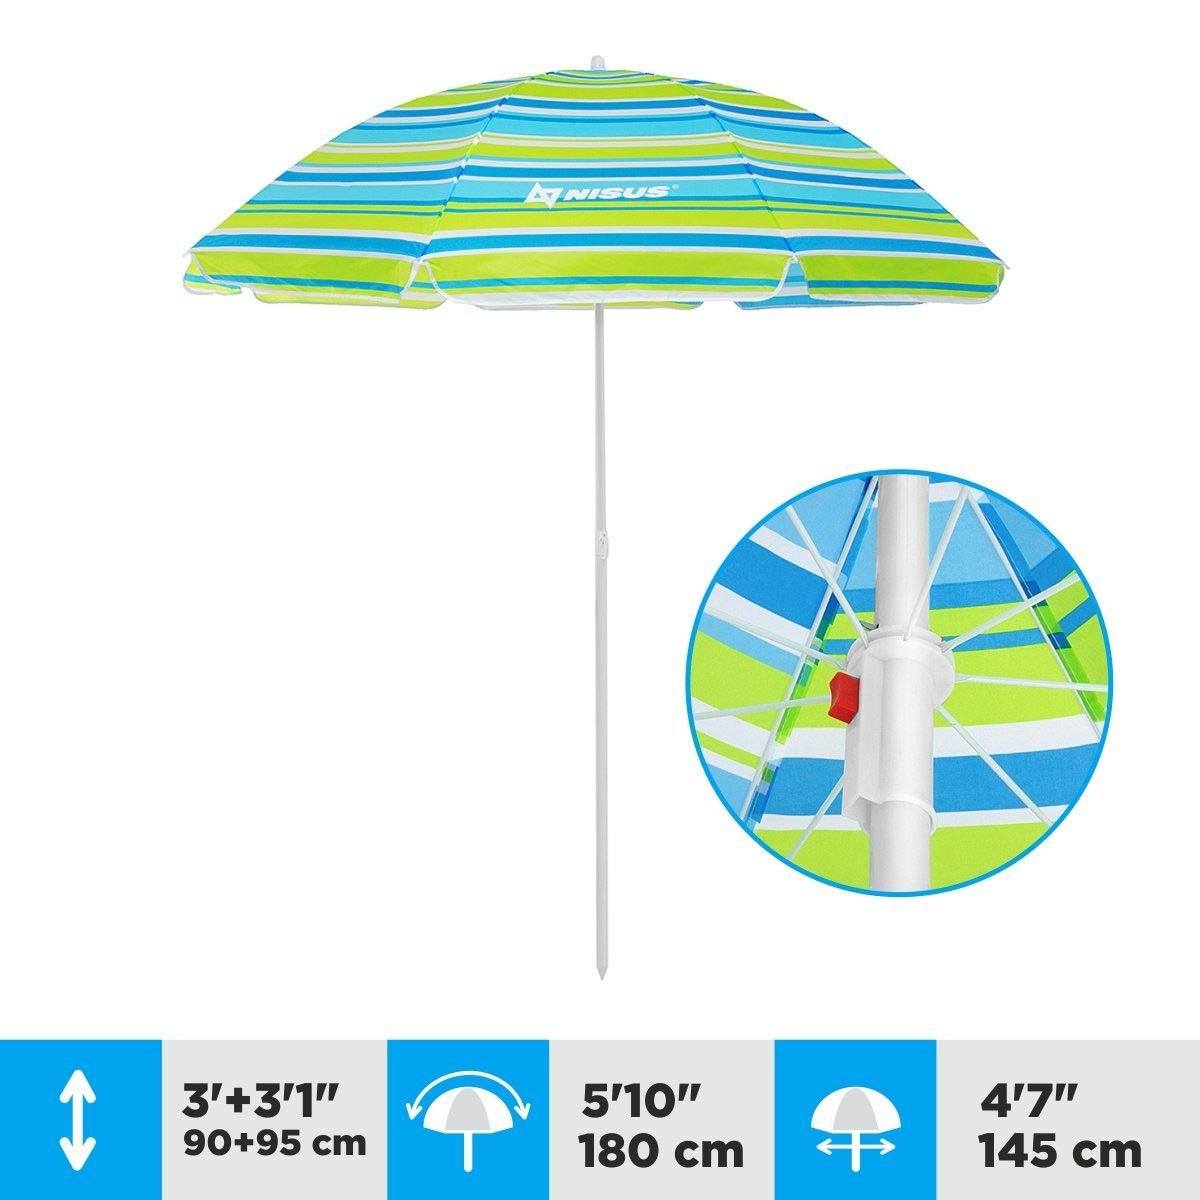 A 4.7 ft Sea-Green Tilting Beach Umbrella is 6.1 ft high